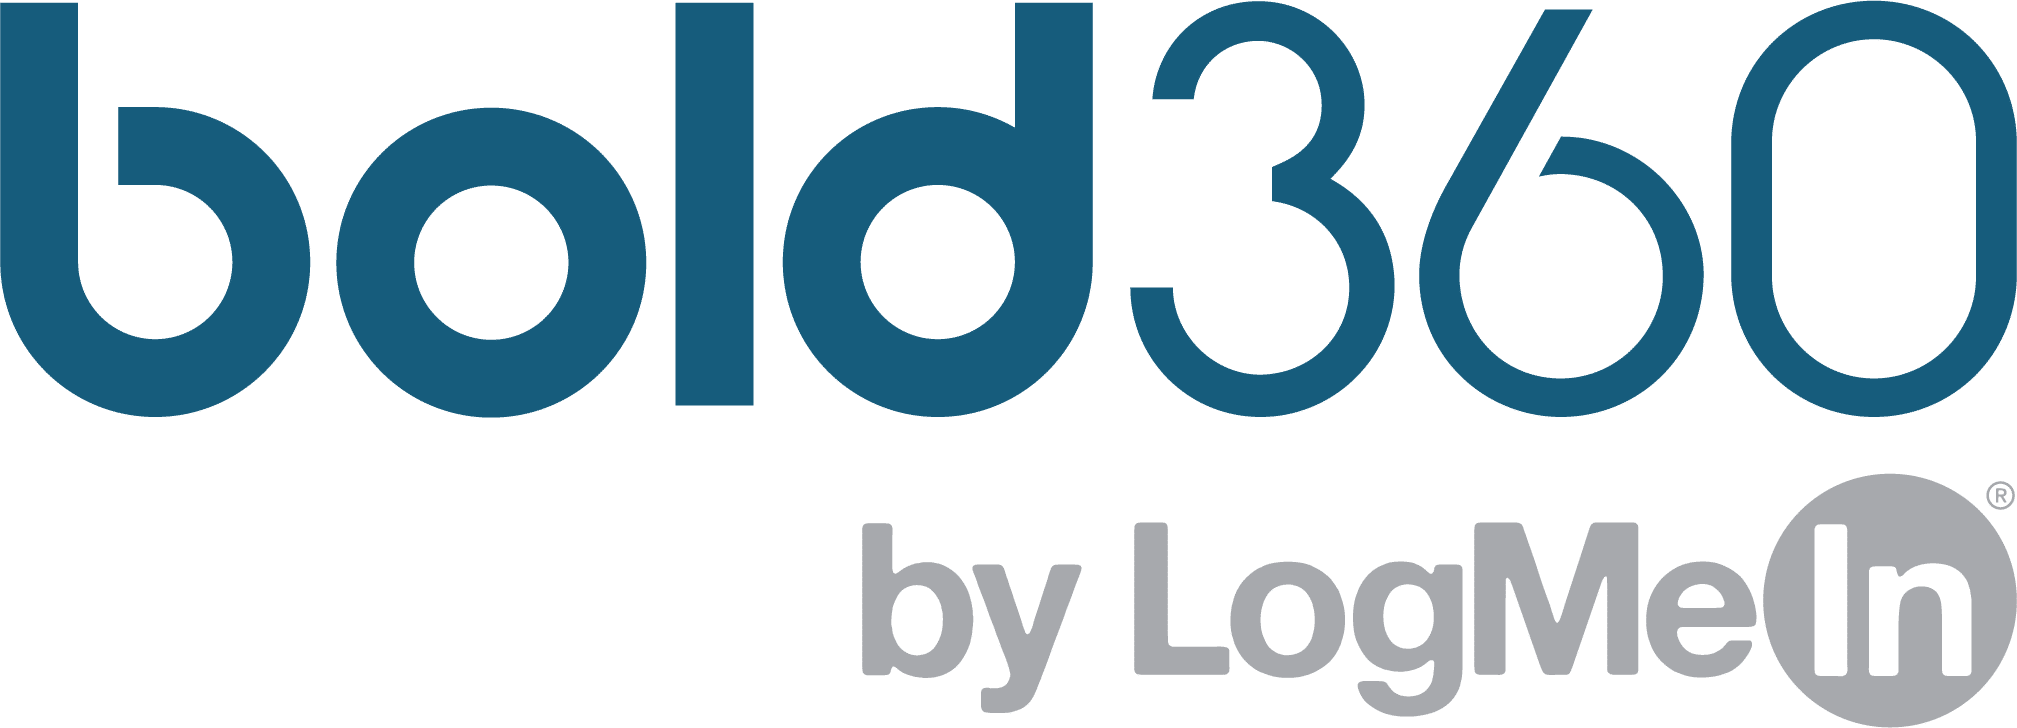 Bold360 Logo